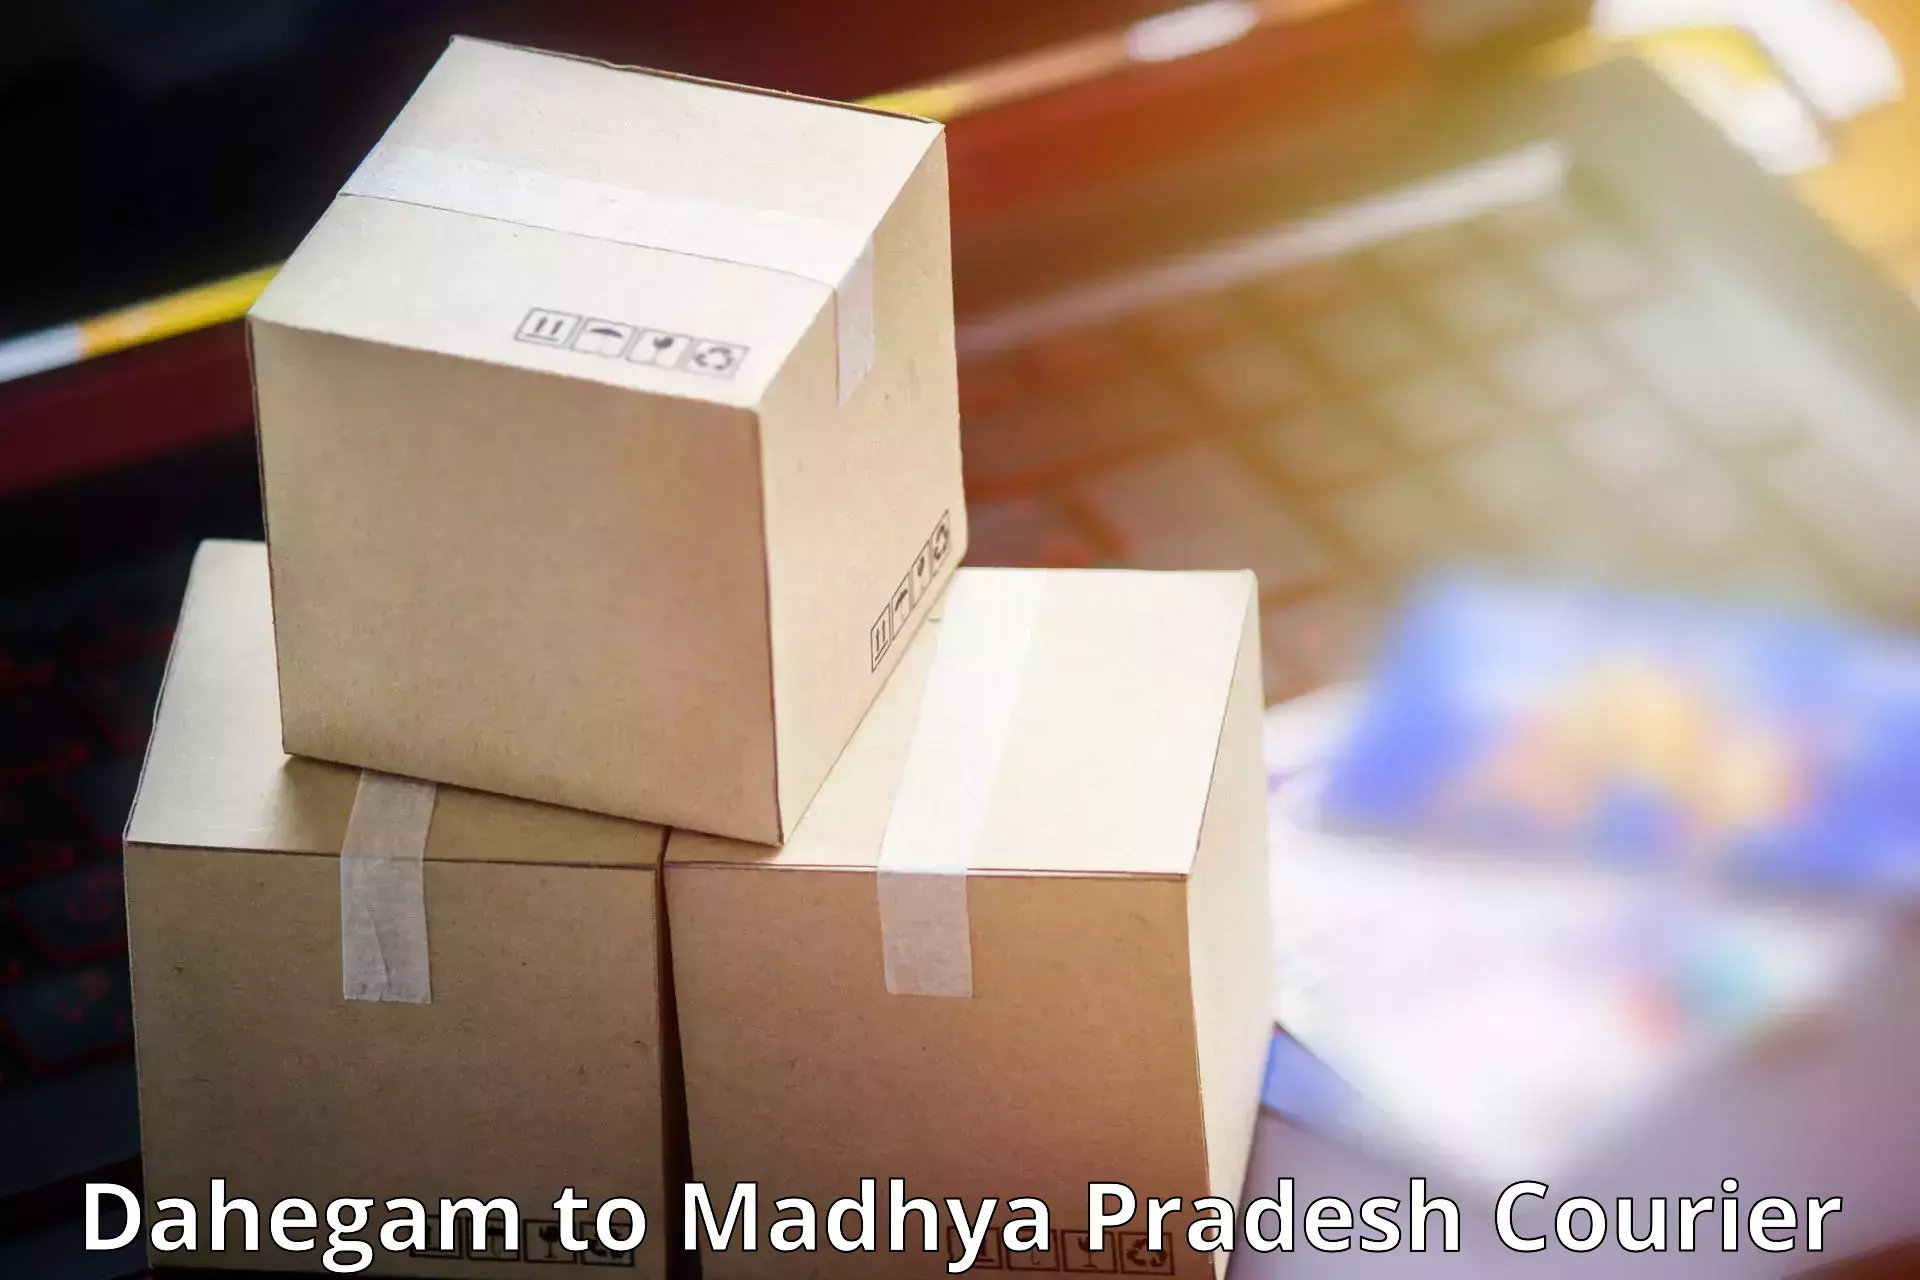 Reliable courier services Dahegam to Badnagar